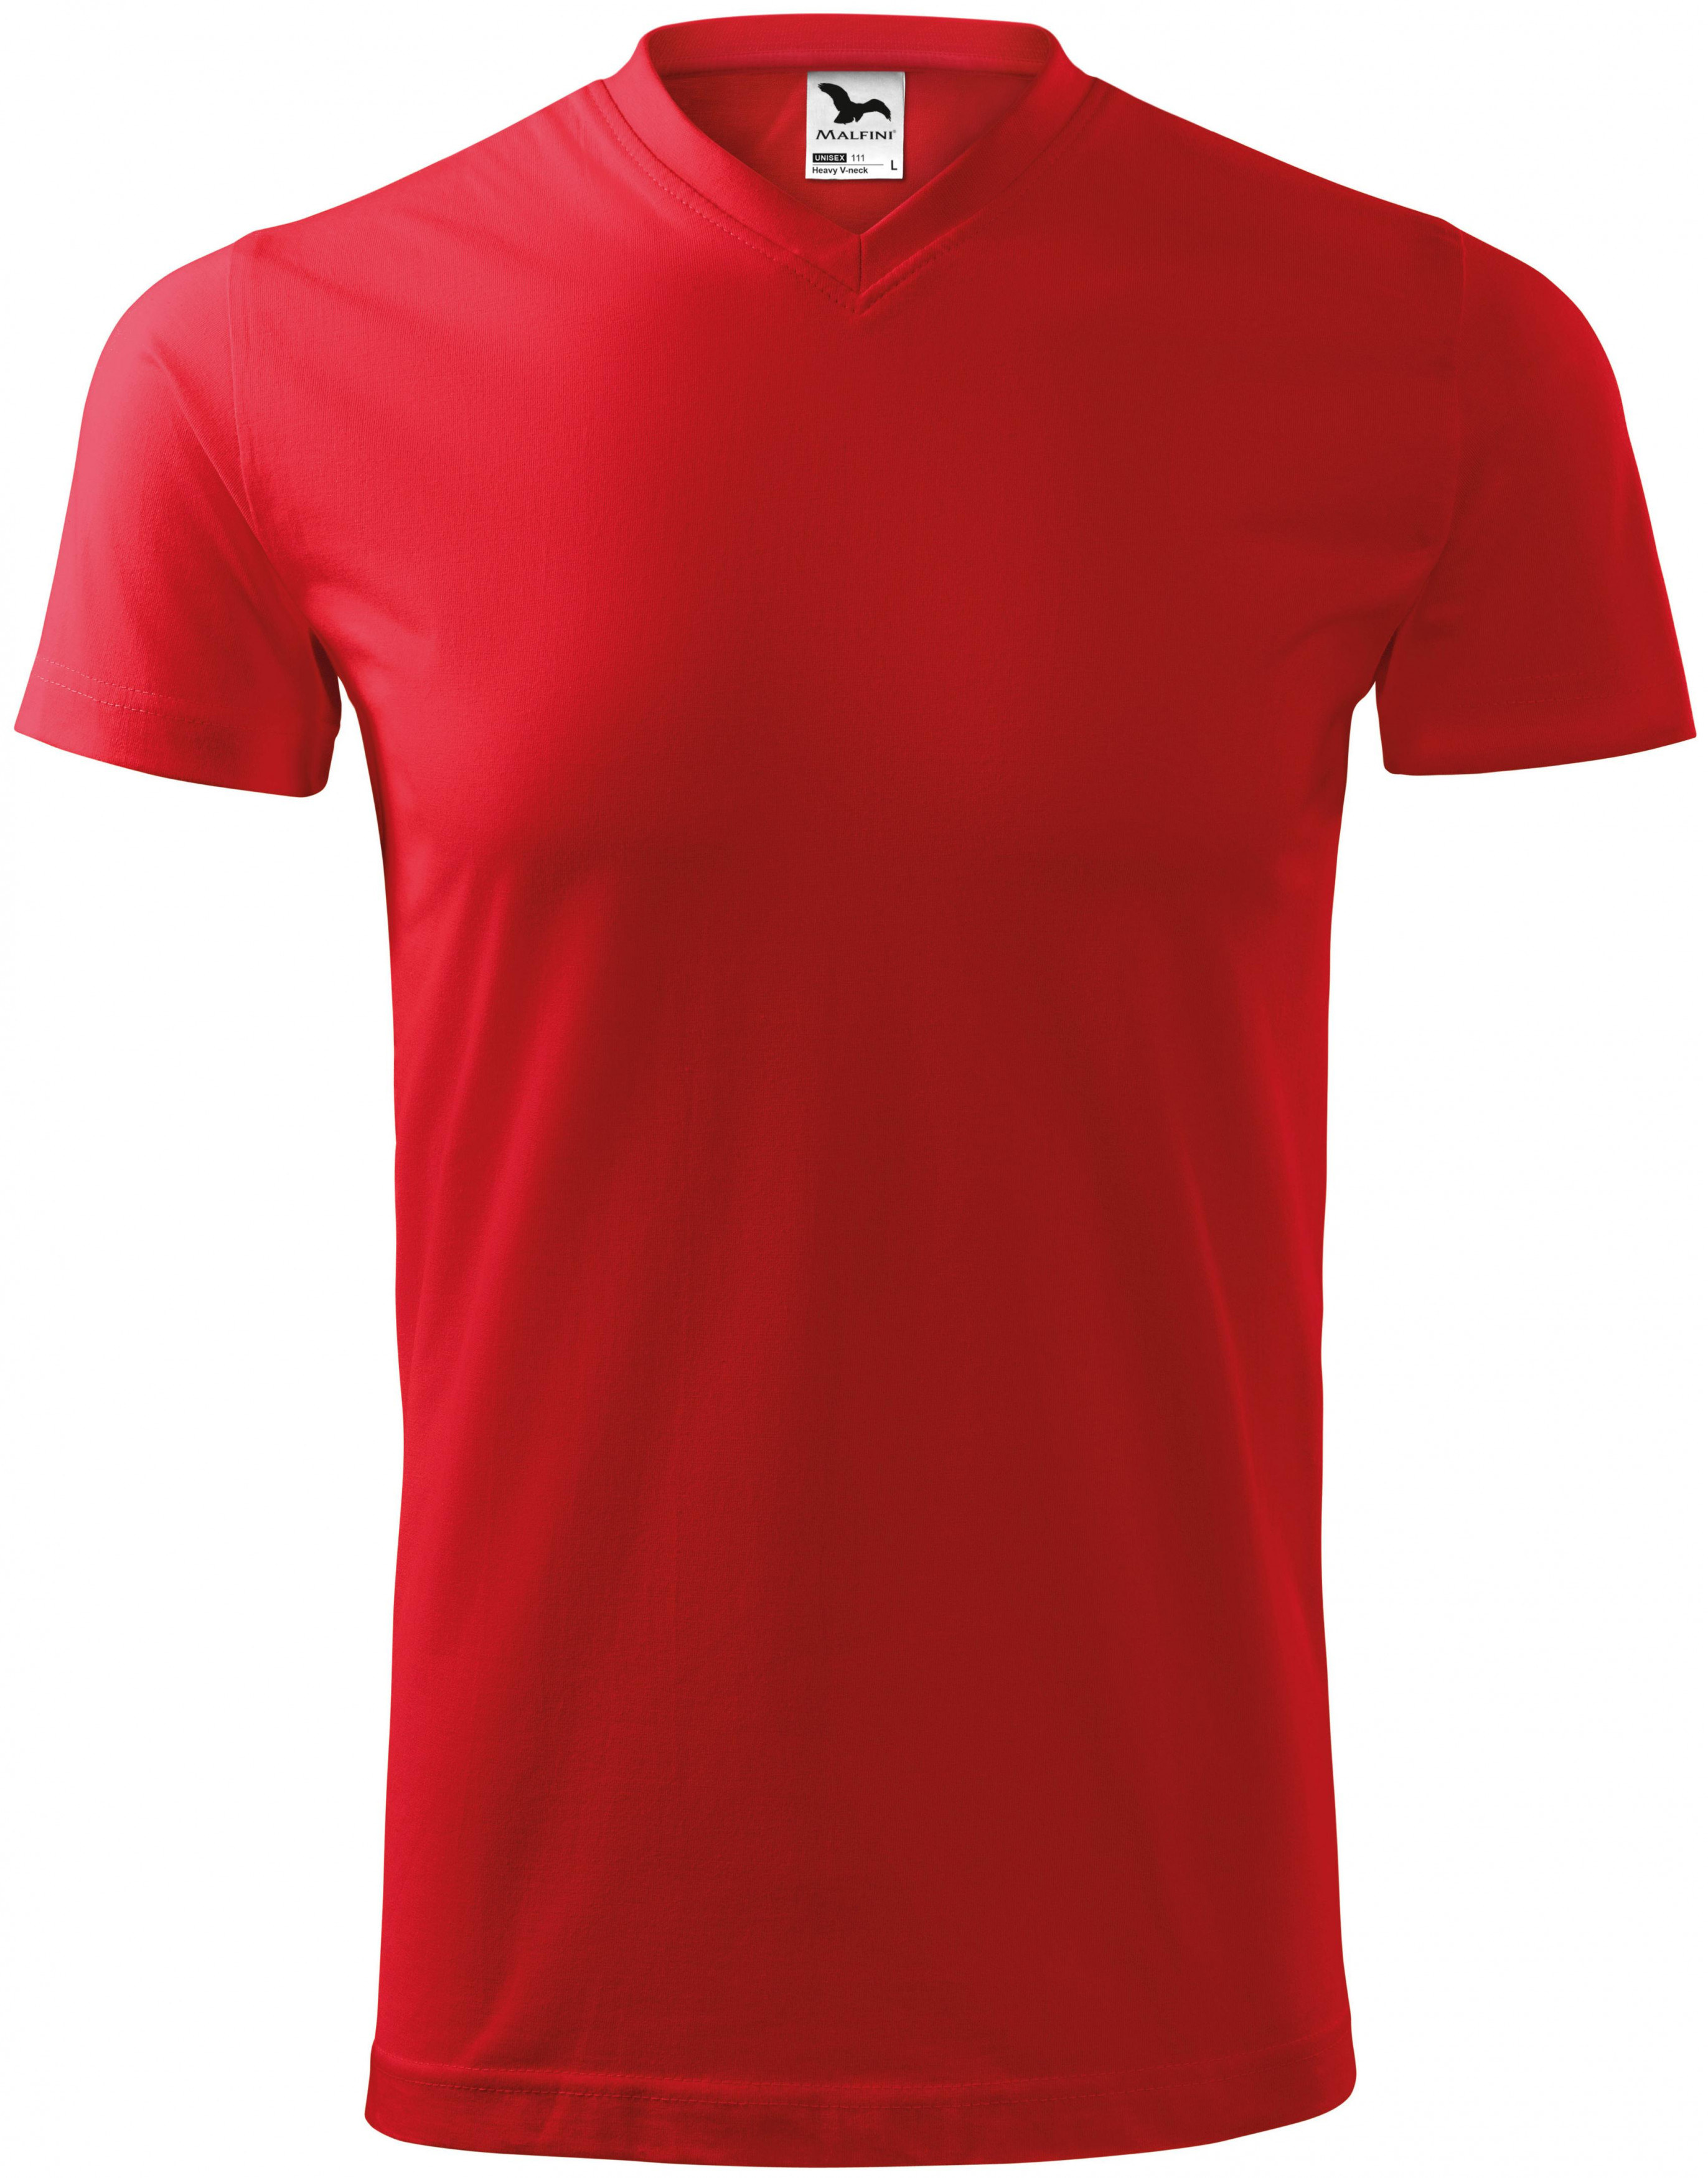 Tričko s krátkym rukávom, hrubšie, červená, XL